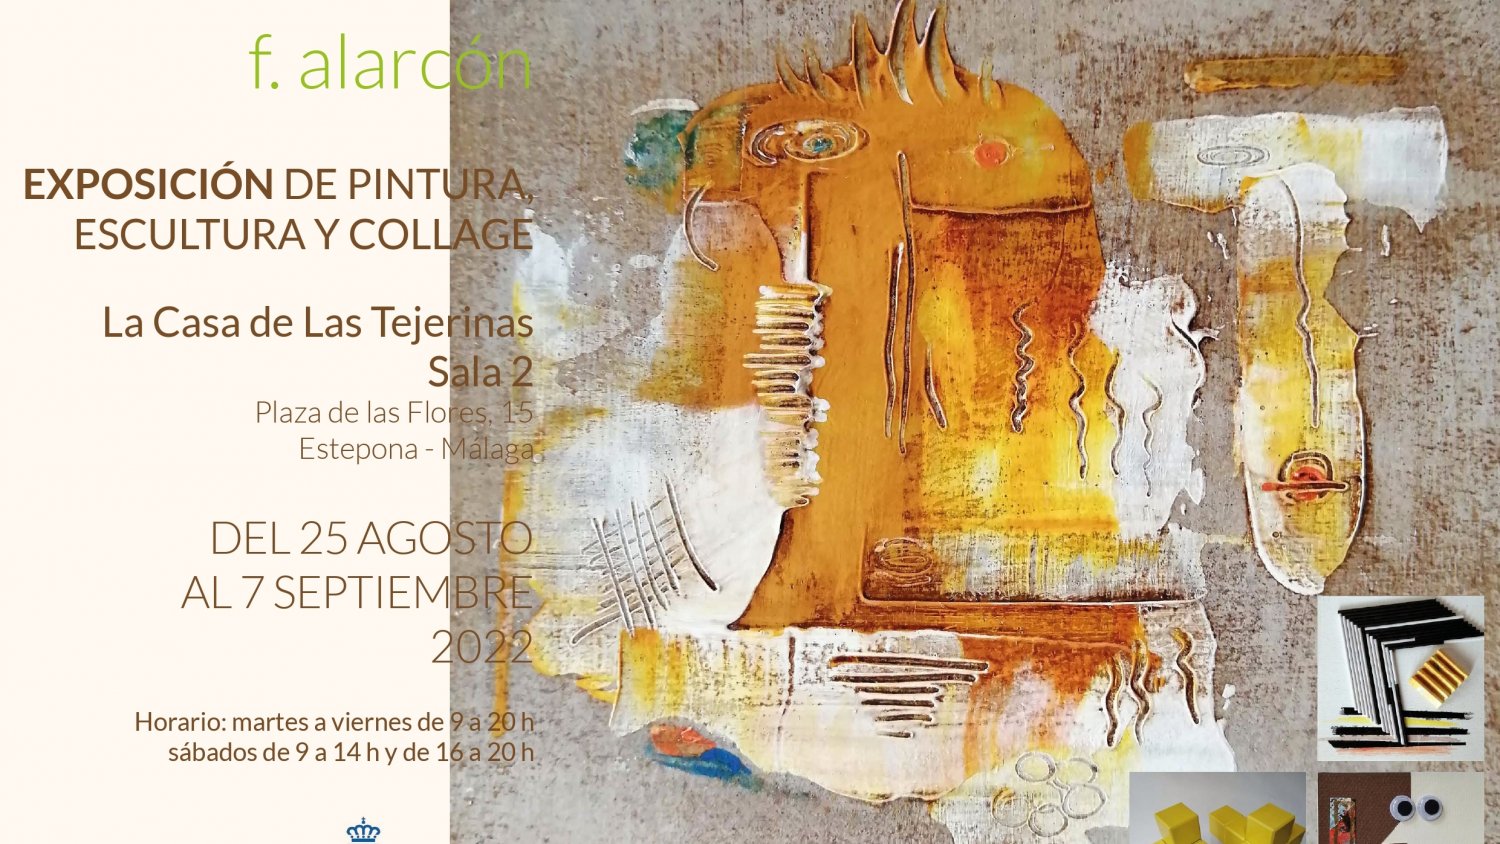 Francisco Alarcón expondrá la próxima semana sus pinturas y collages en la Casa de Las Tejerinas